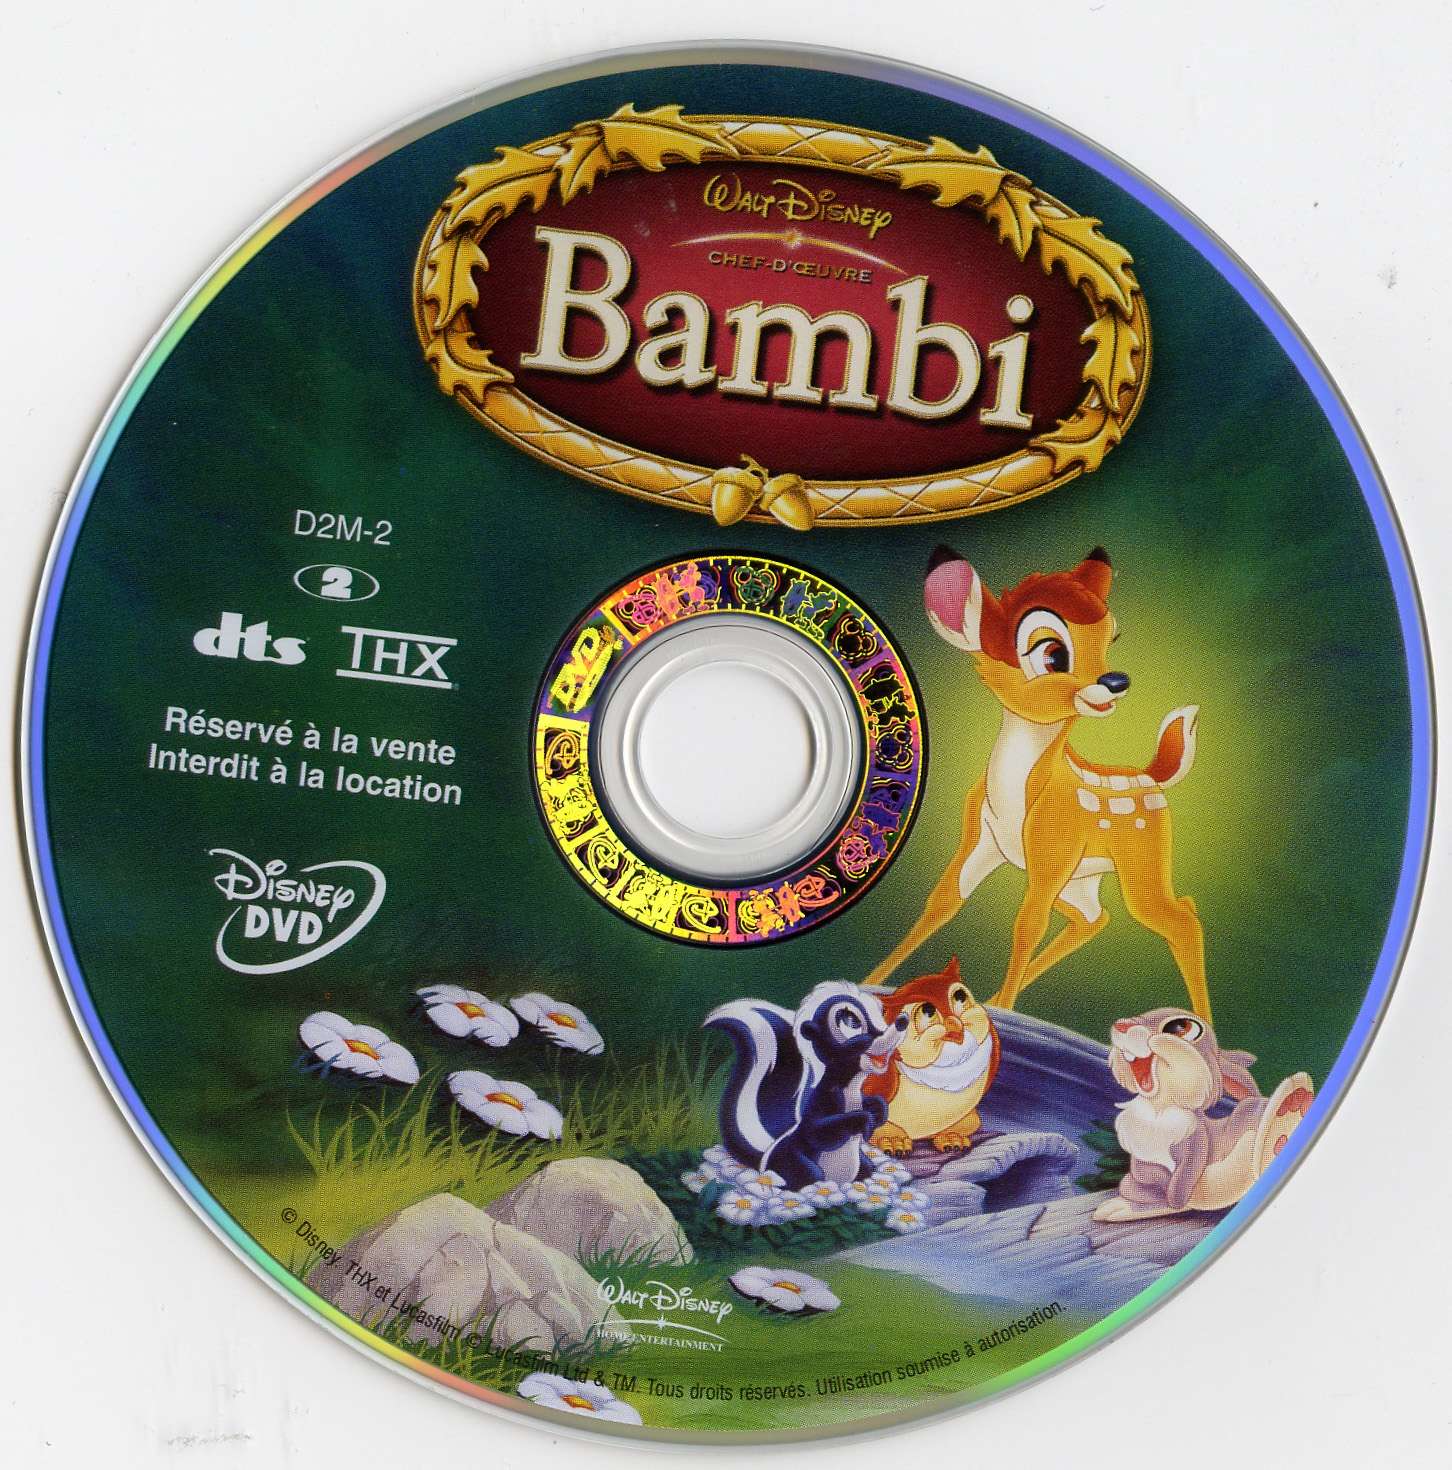 Bambi v2